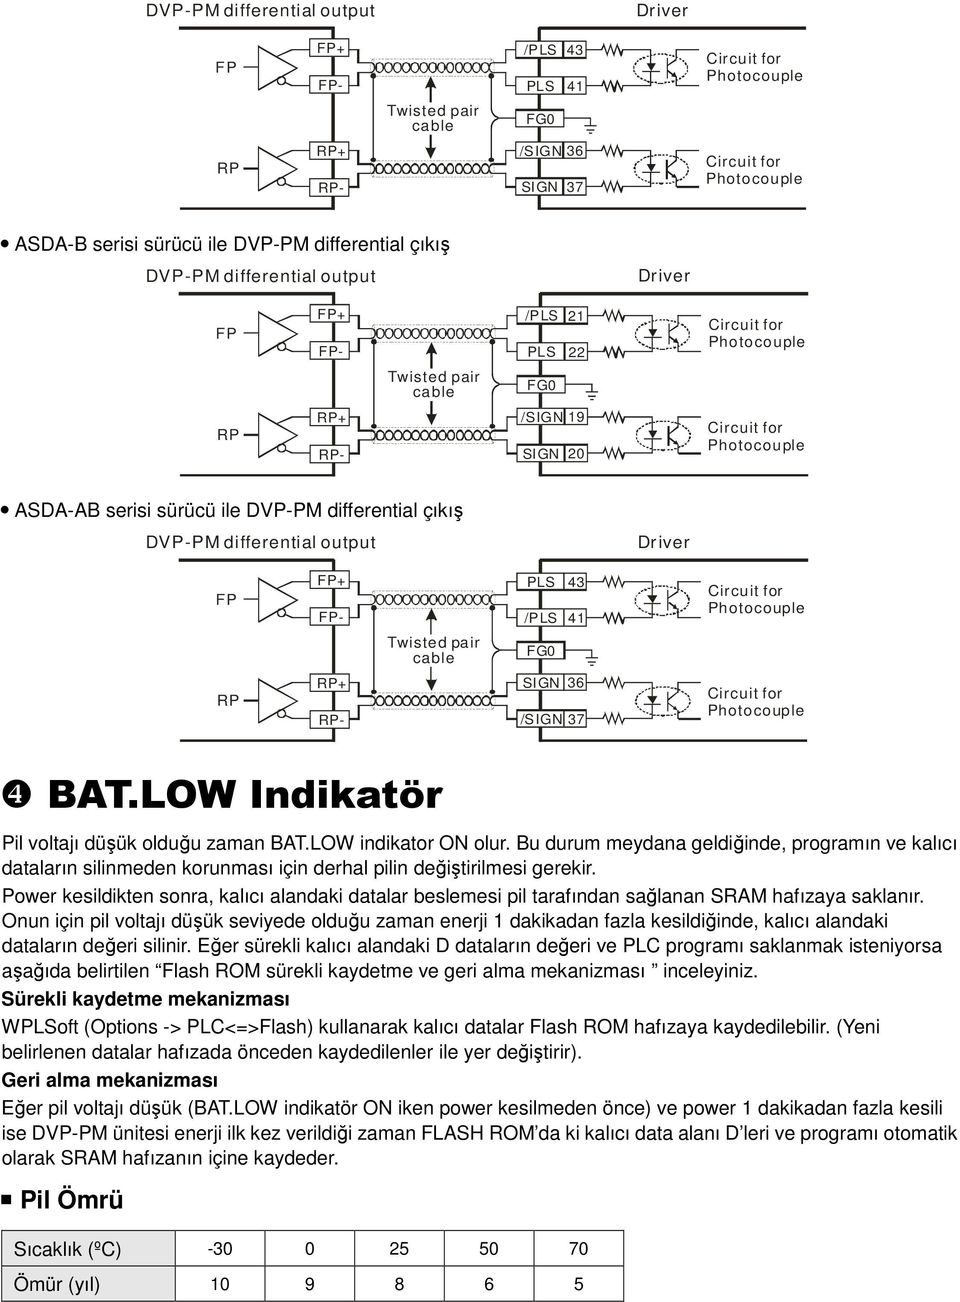 LOW Indikatör Pil voltajı düşük olduğu zaman BAT.LOW indikator ON olur. Bu durum meydana geldiğinde, programın ve kalıcı dataların silinmeden korunması için derhal pilin değiştirilmesi gerekir.